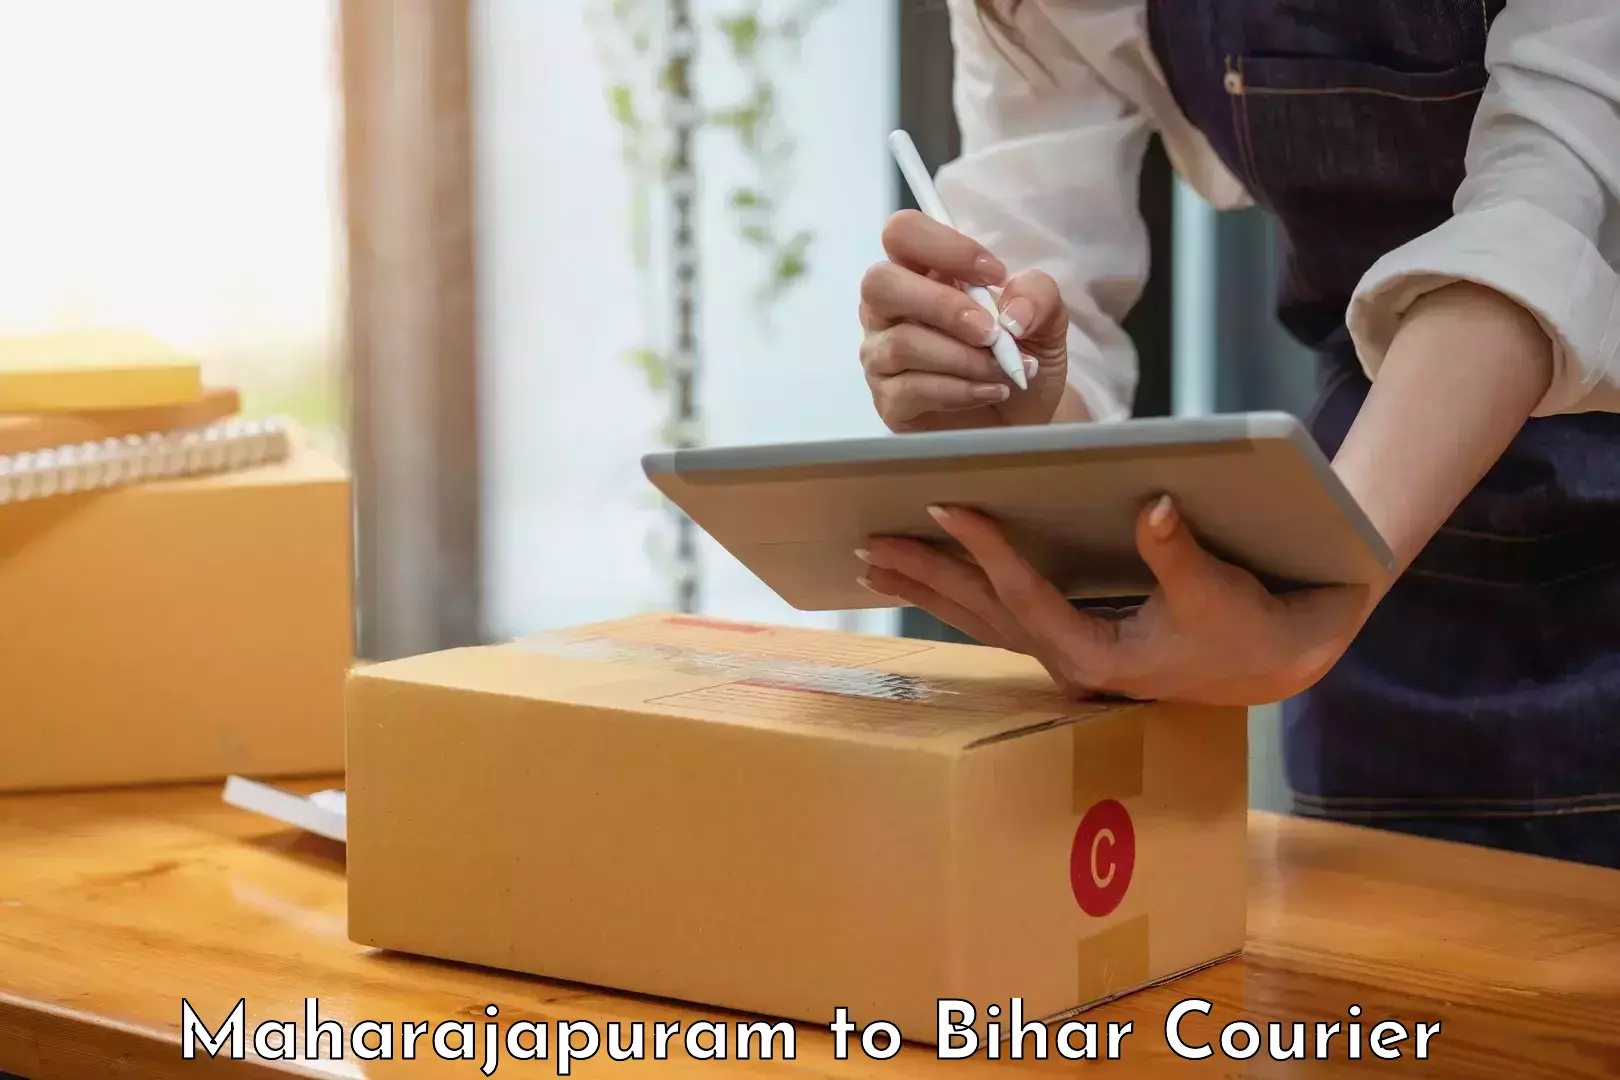 Premium courier solutions in Maharajapuram to Araria